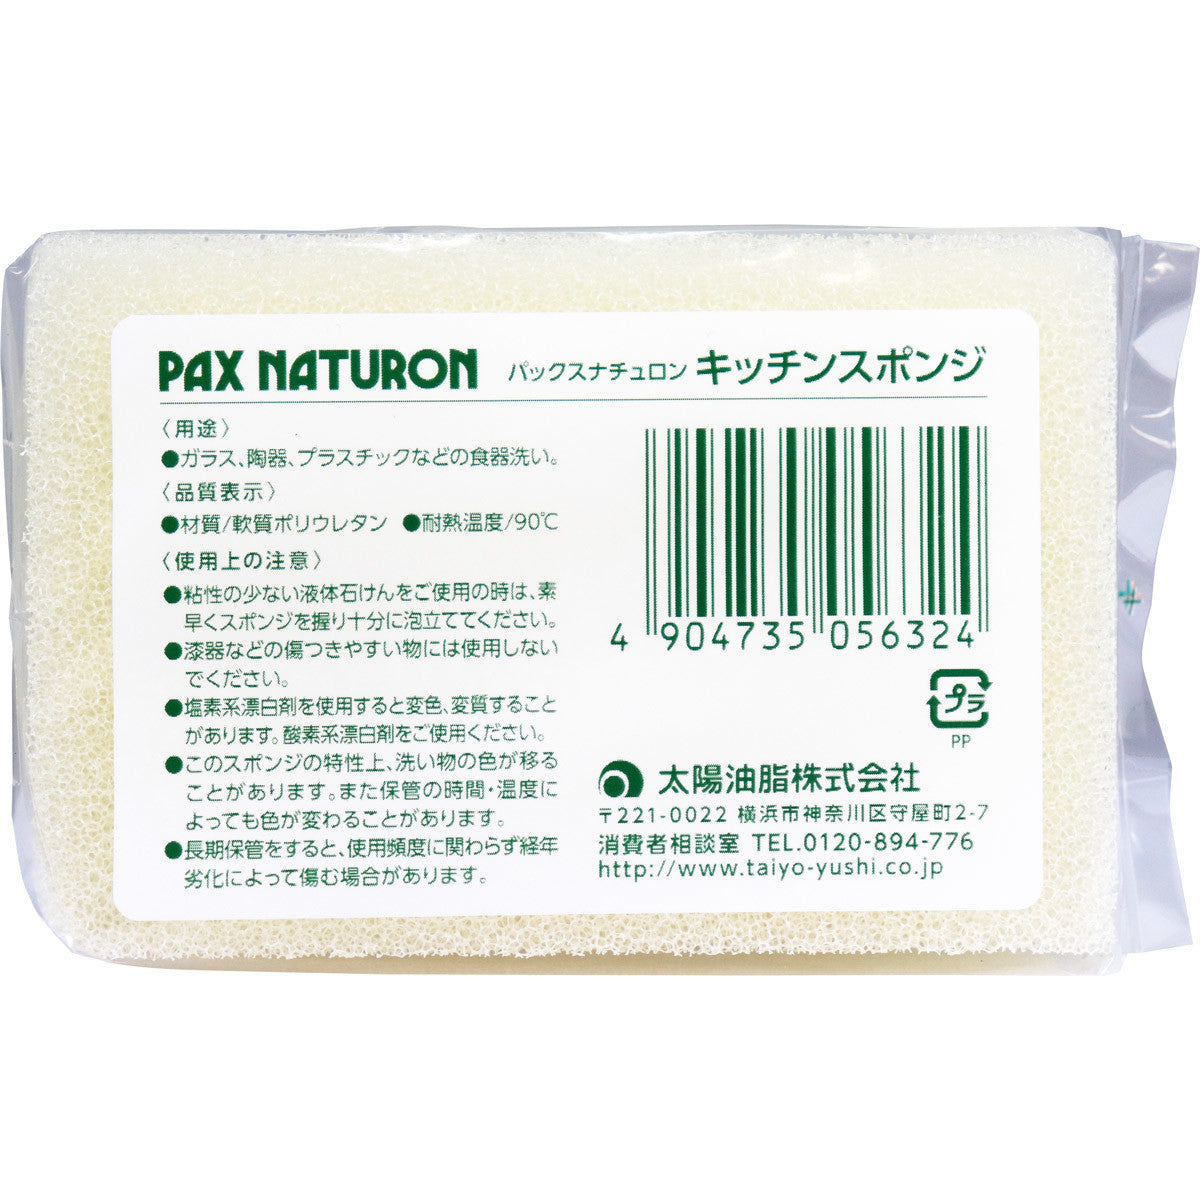 Pax Naturon - Natural Kitchen Sponge